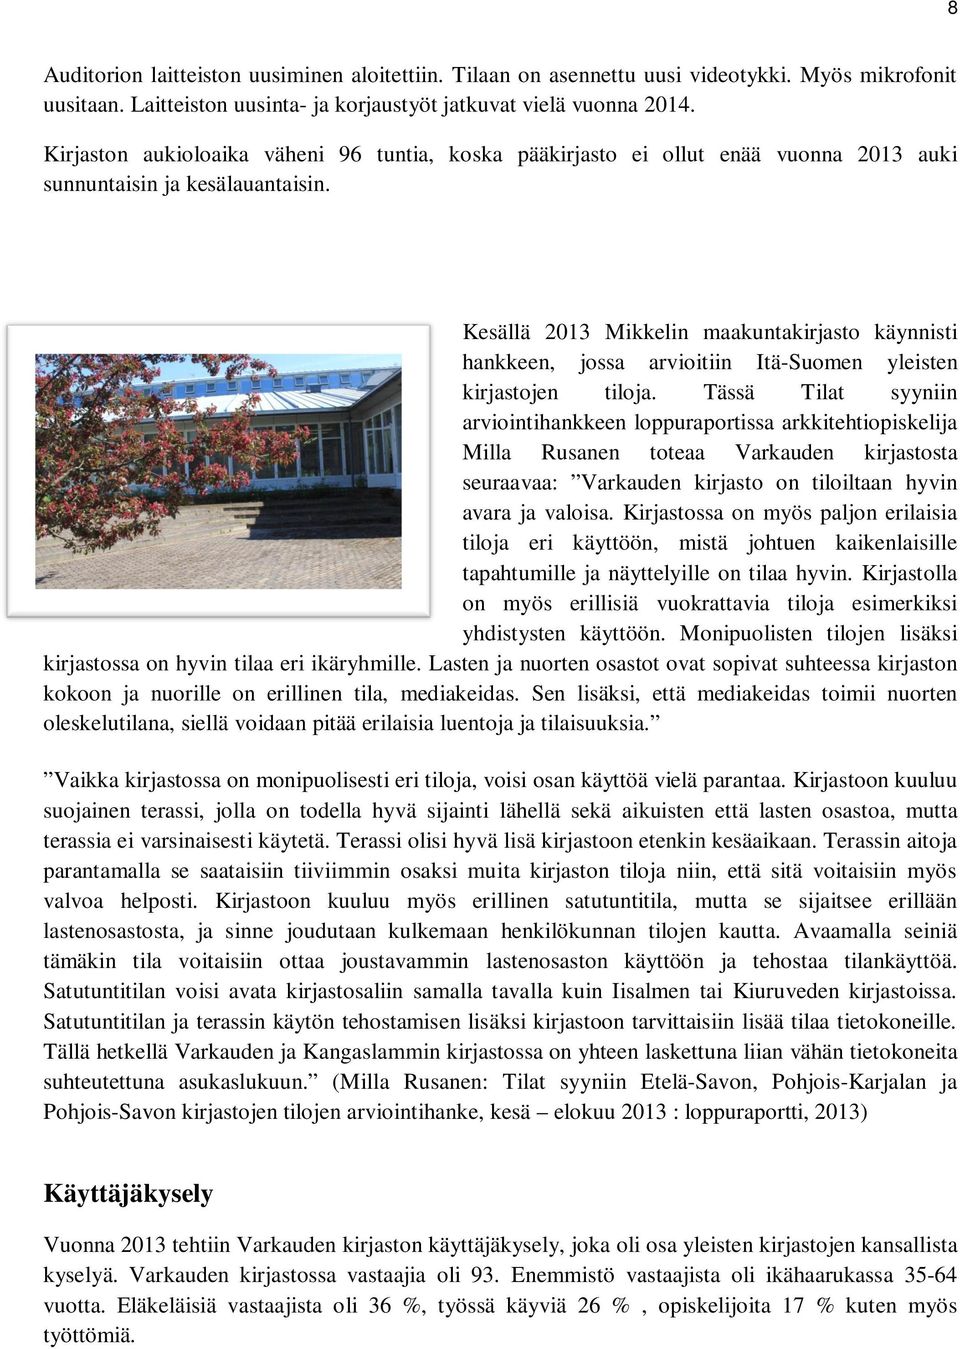 Kesällä 2013 Mikkelin maakuntakirjasto käynnisti hankkeen, jossa arvioitiin Itä-Suomen yleisten kirjastojen tiloja.